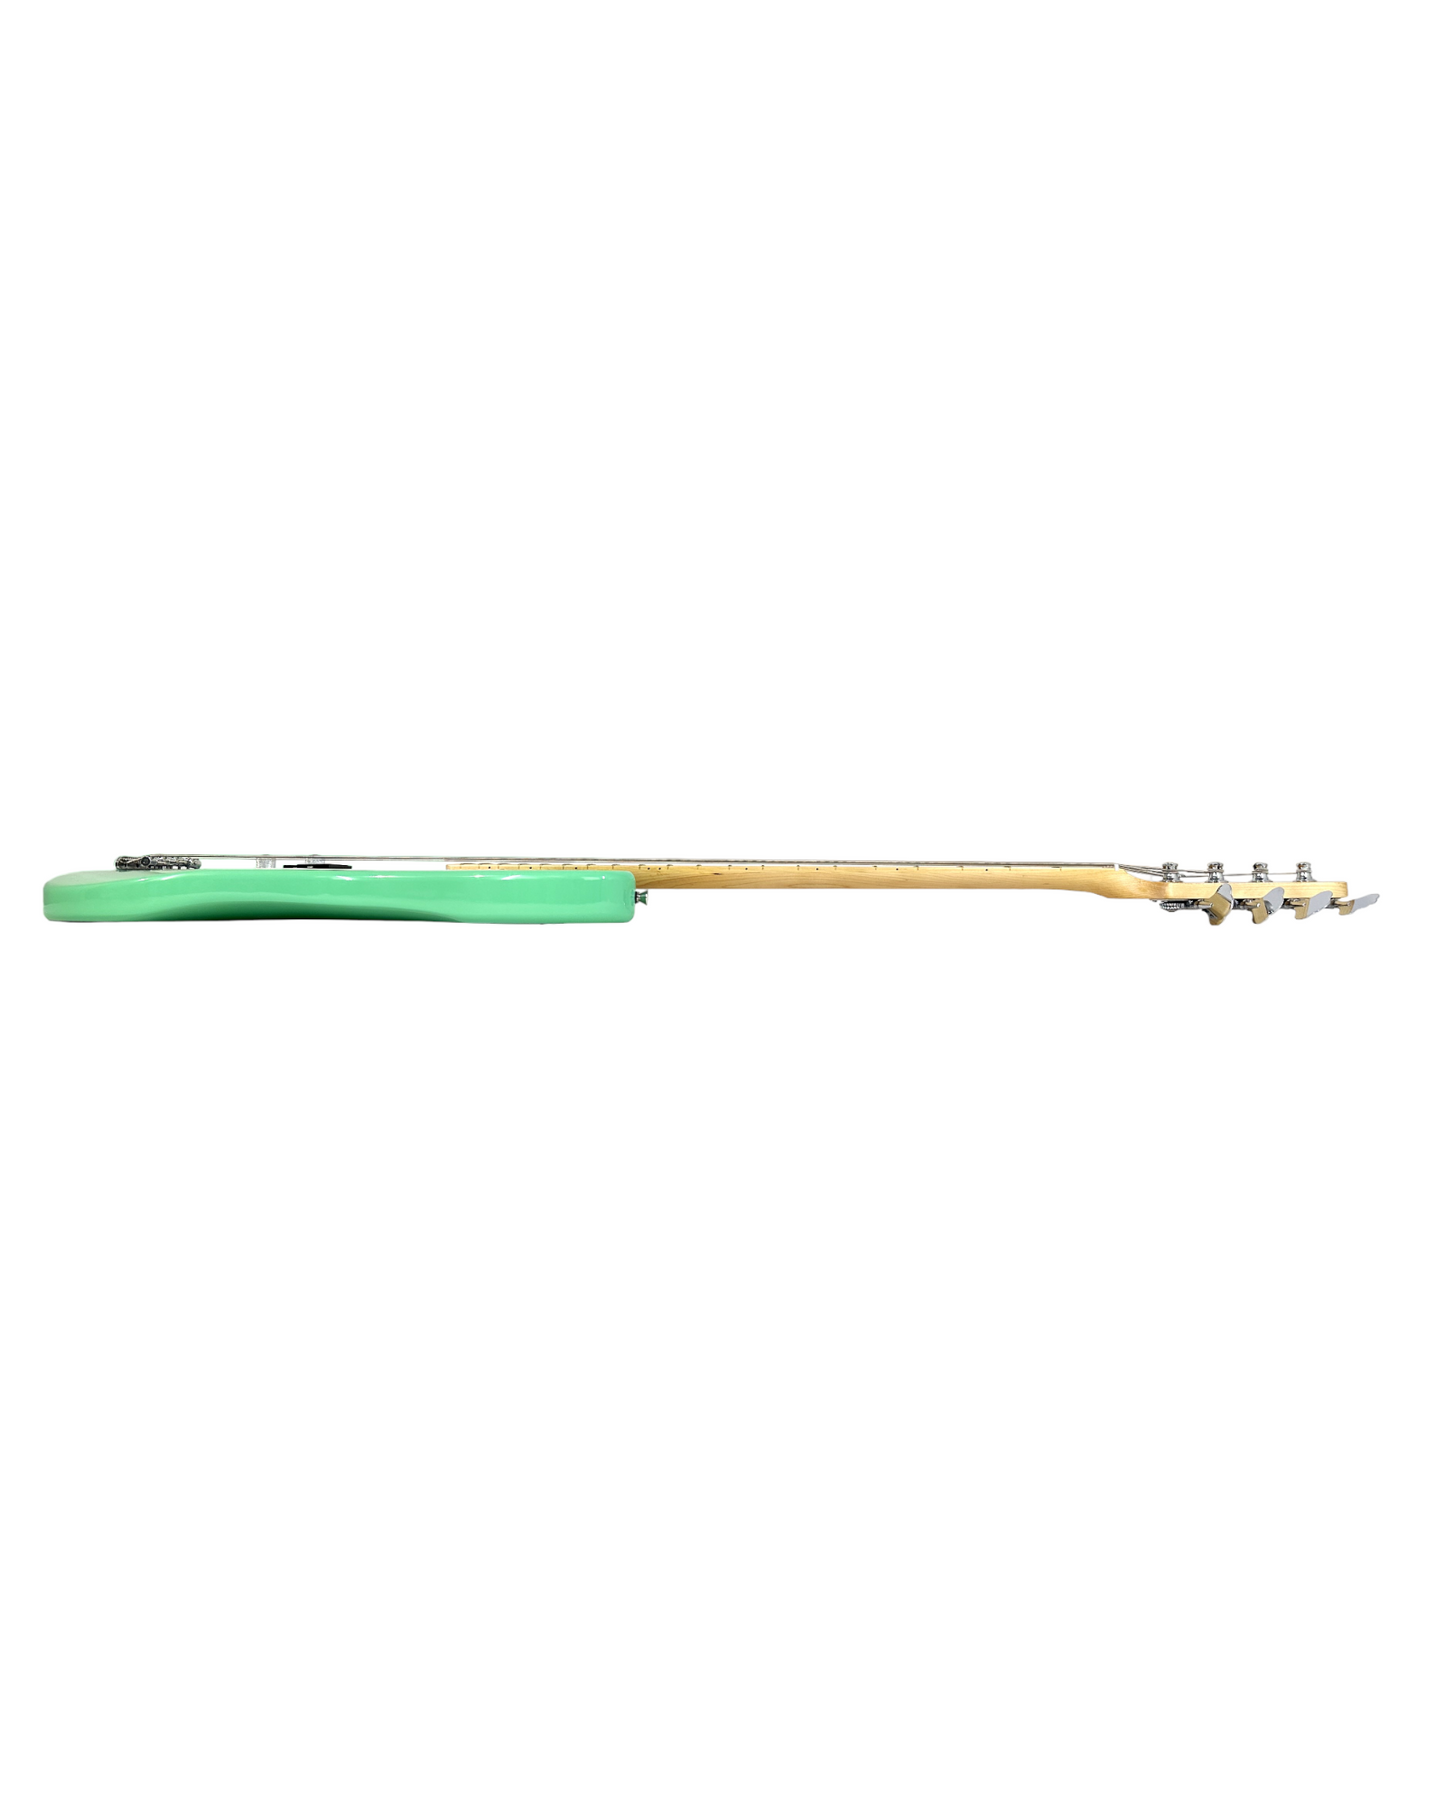 Haze Left Handed Basswood Seafoam Green Electric Bass Guitar - Surf Green PB172SGNLH